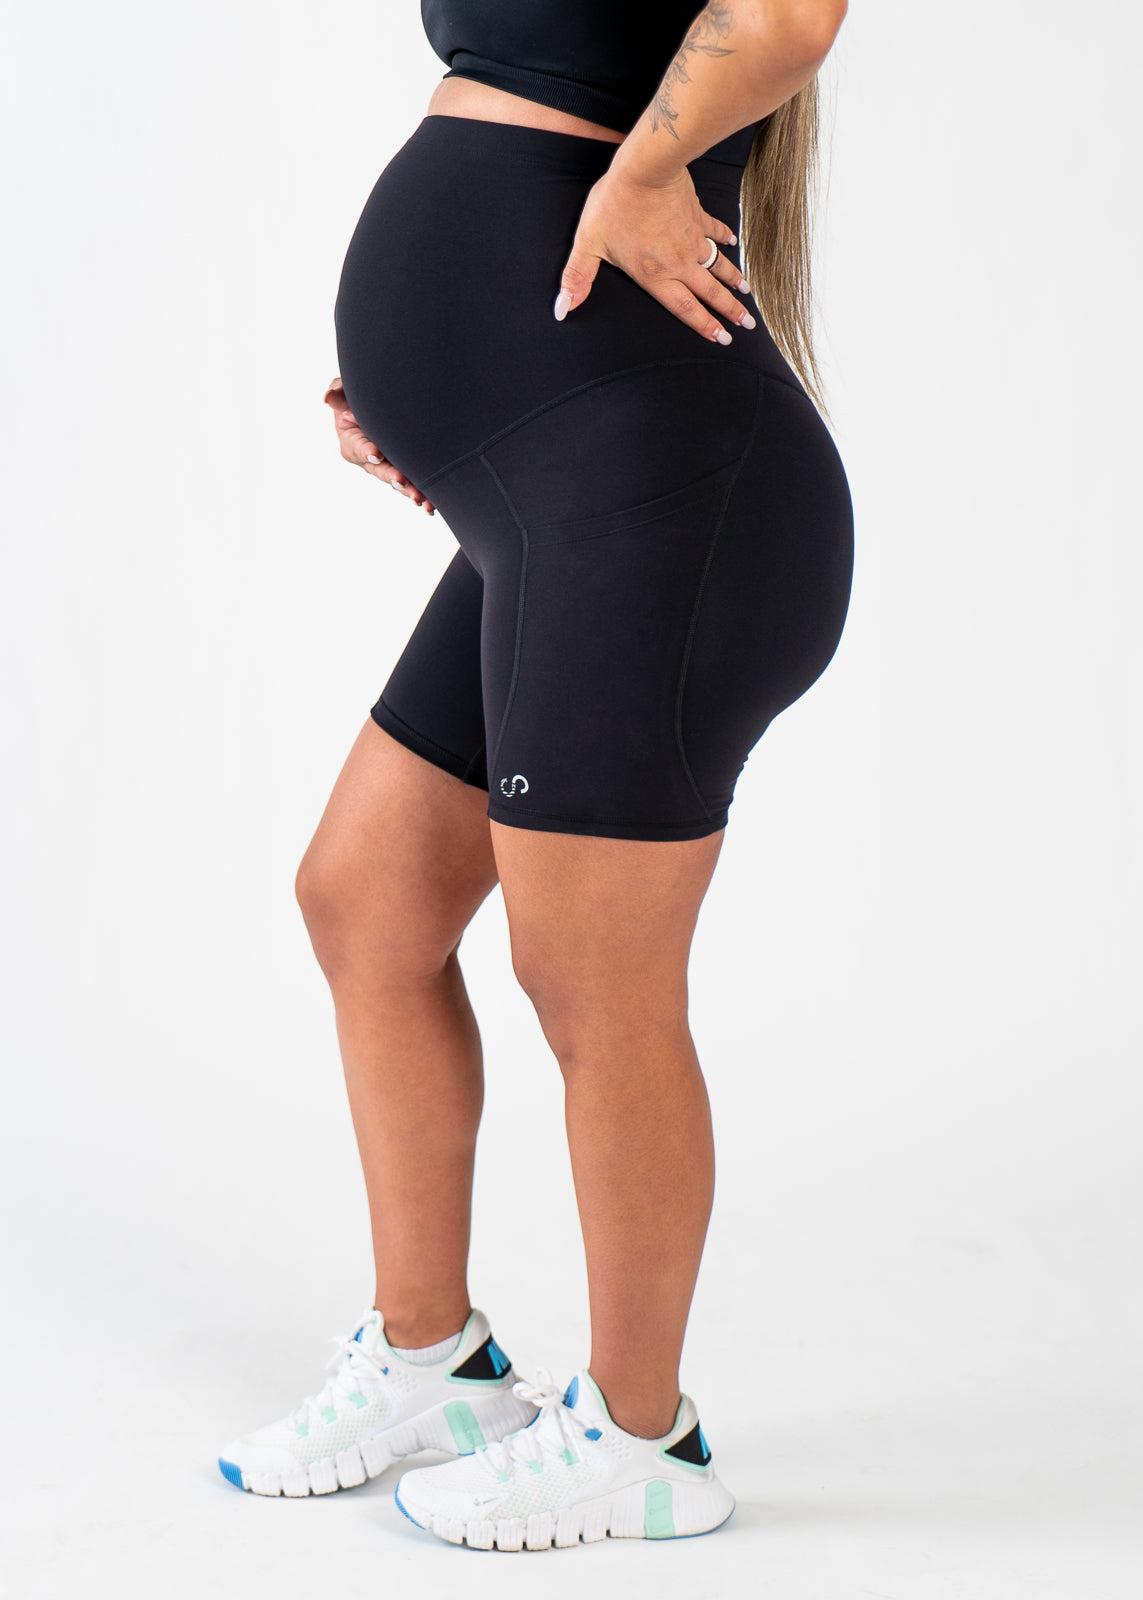 NKD Maternity Shorts With Pockets | Black